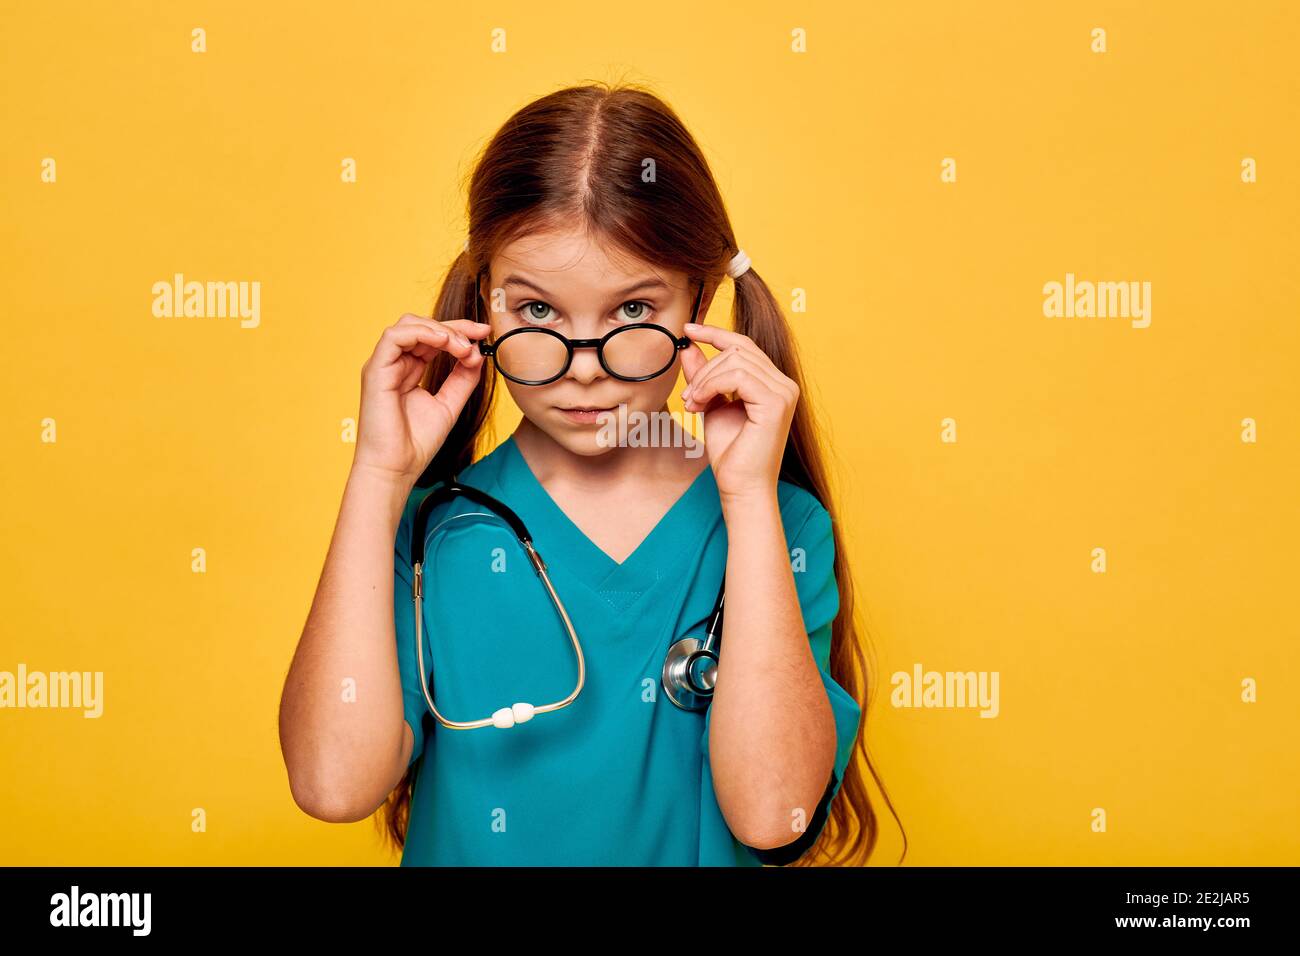 Mädchen trägt ein blaues medizinisches Outfit und ein Stethoskop, zukünftige Arzt, und zeigt auf ihrem Gesicht ernsthafte Emotion, Blick unter der Brille Stockfoto